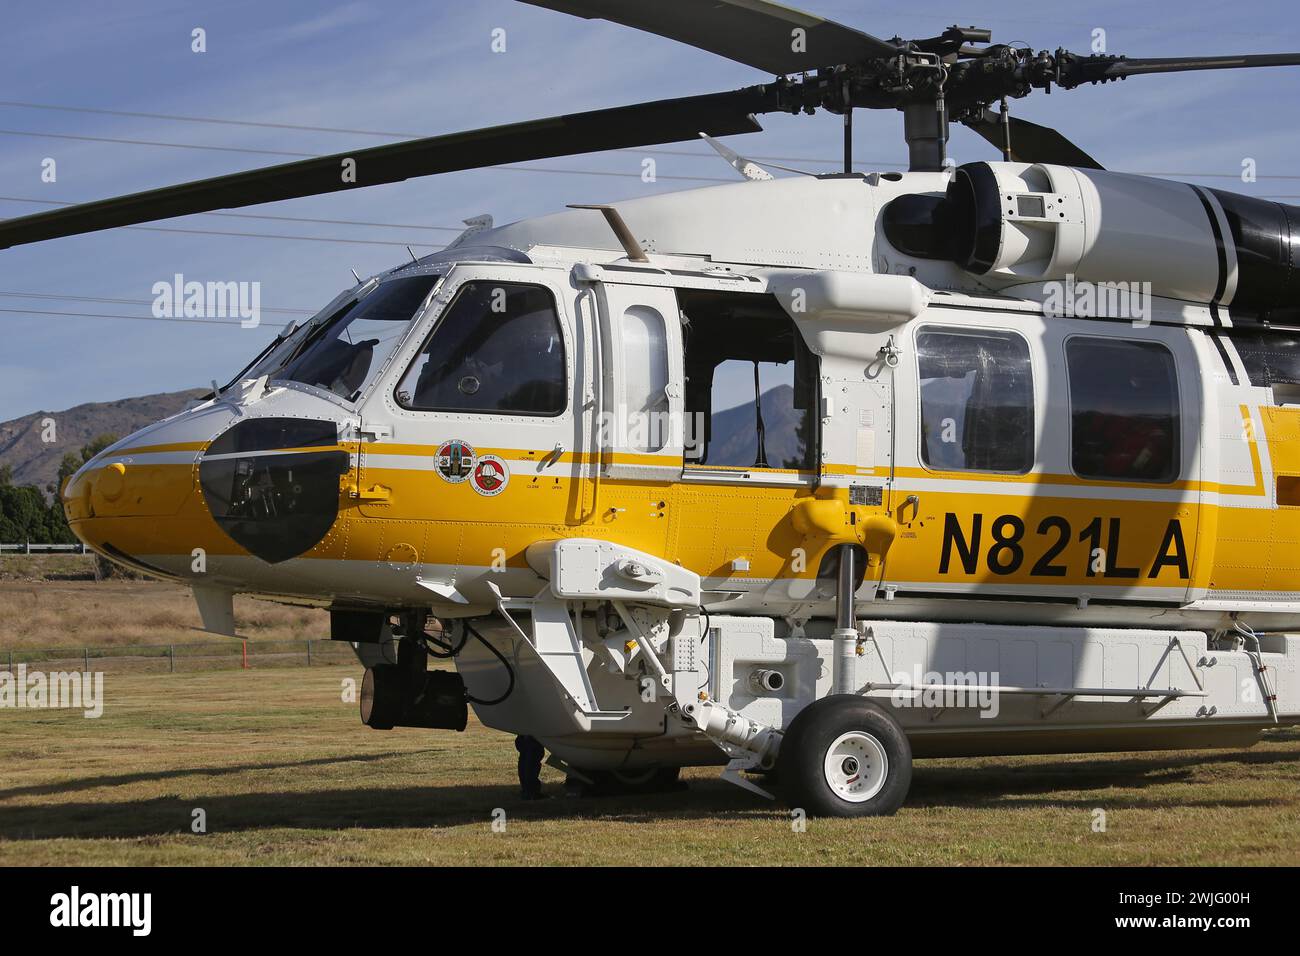 Los Angeles, California, Stati Uniti d'America - 4 novembre 2023: Viene mostrato un elicottero Sikorsky S-70 Firehawk (N821LA), gestito dal dipartimento dei vigili del fuoco della contea di Los Angeles. Foto Stock